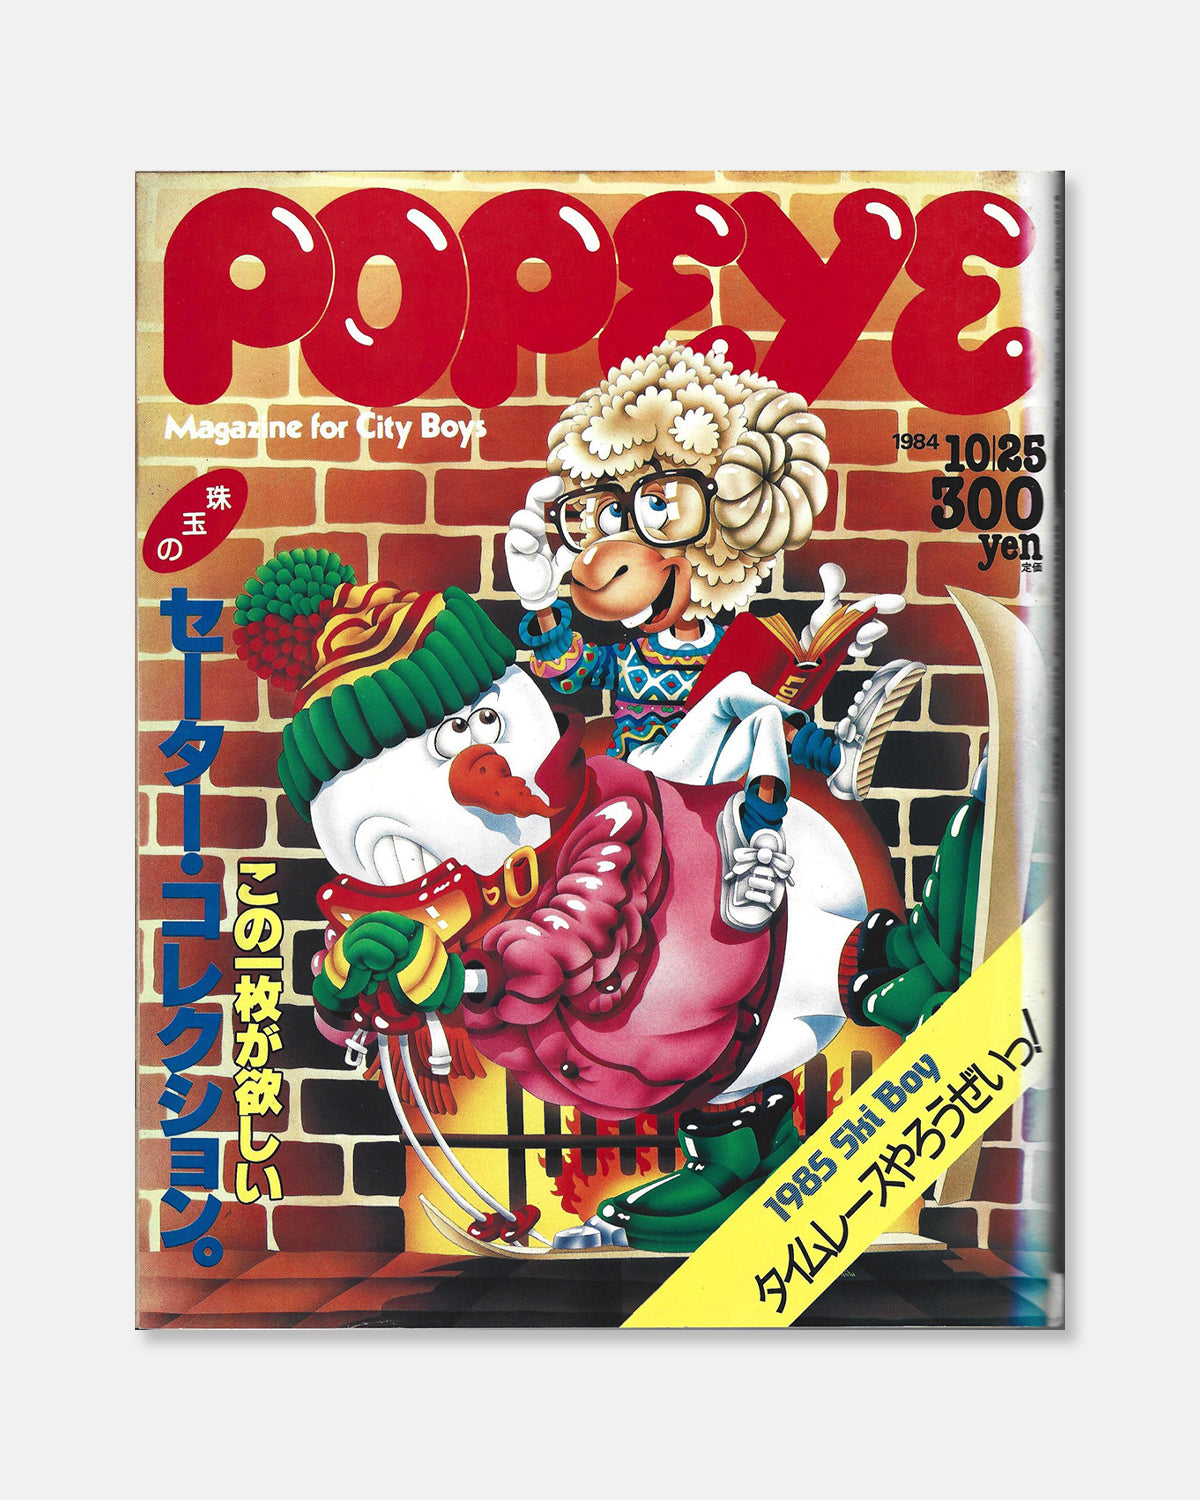 Popeye Magazine October 1984 (#185)